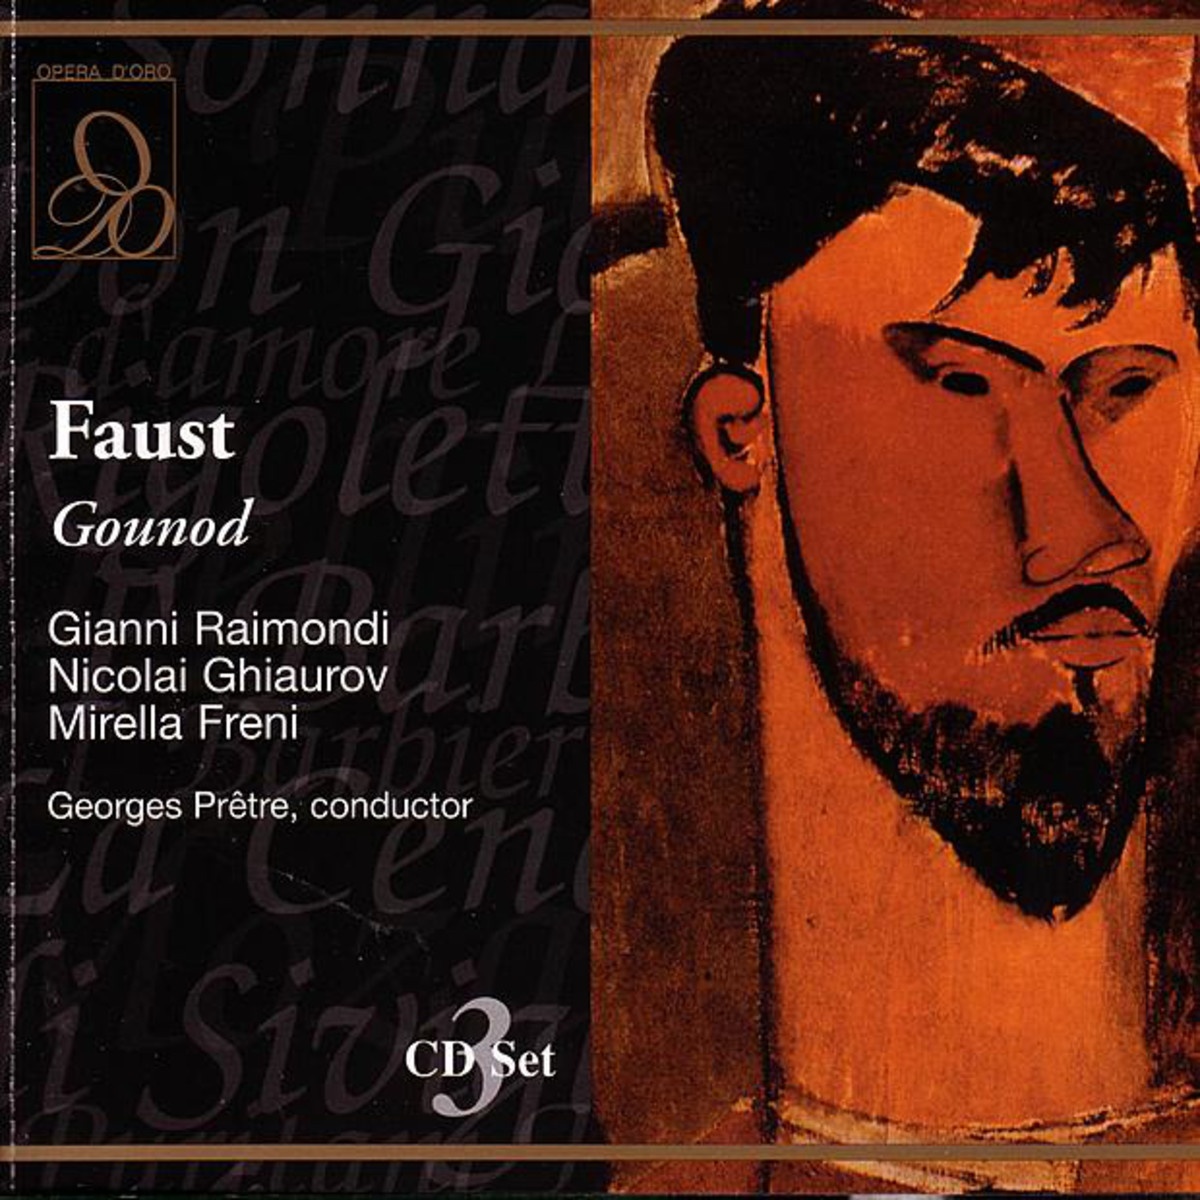 Faust 1986 Digital Remaster, Act IV, Seigneur, daignez permettre.......: Seigneur, daignez permettre Marguerite Me phistophe le s Choeur